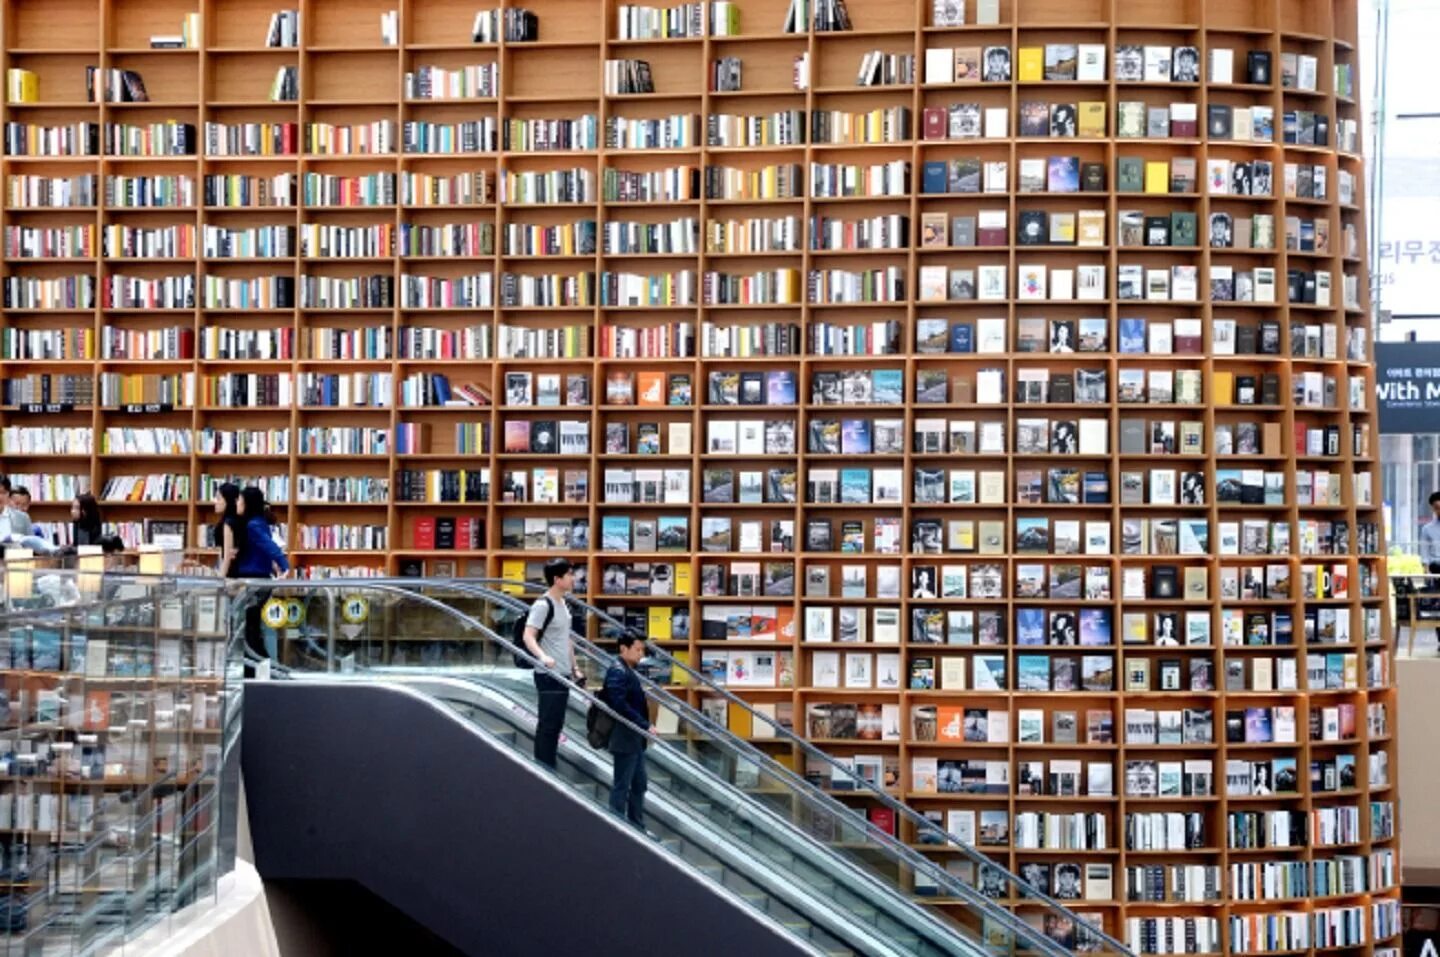 Самые популярные книжные магазины. Библиотека Starfield Library. Южная Корея. Сеул библиотека Starfield. Национальная библиотека Южной Кореи. Библиотека в Сеуле Южная Корея.